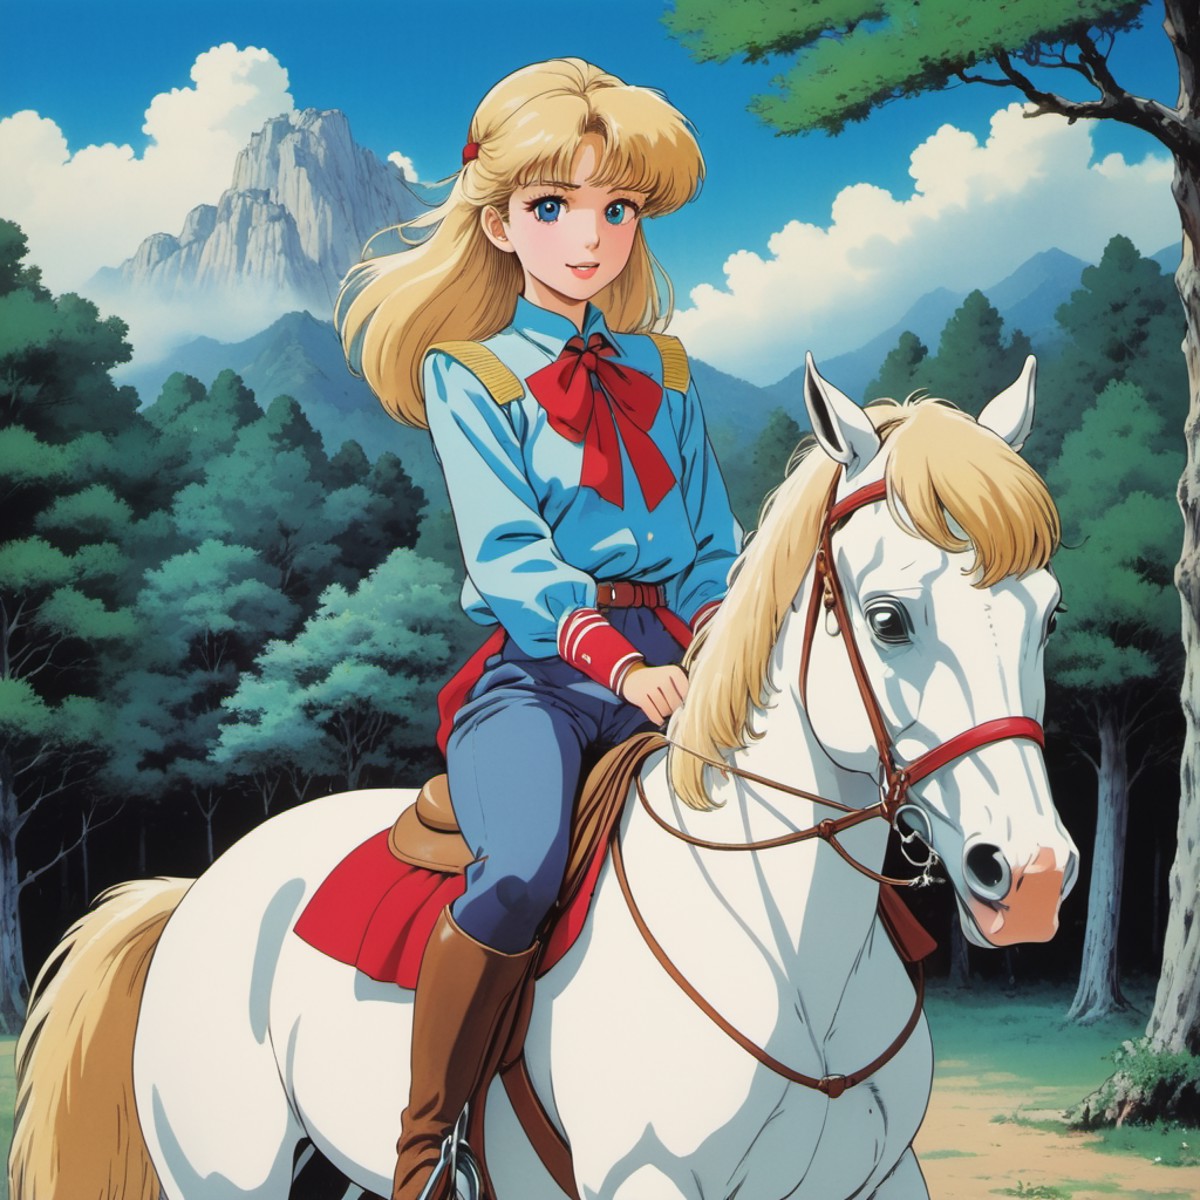 a pretty girl riding a horse, 80s anime